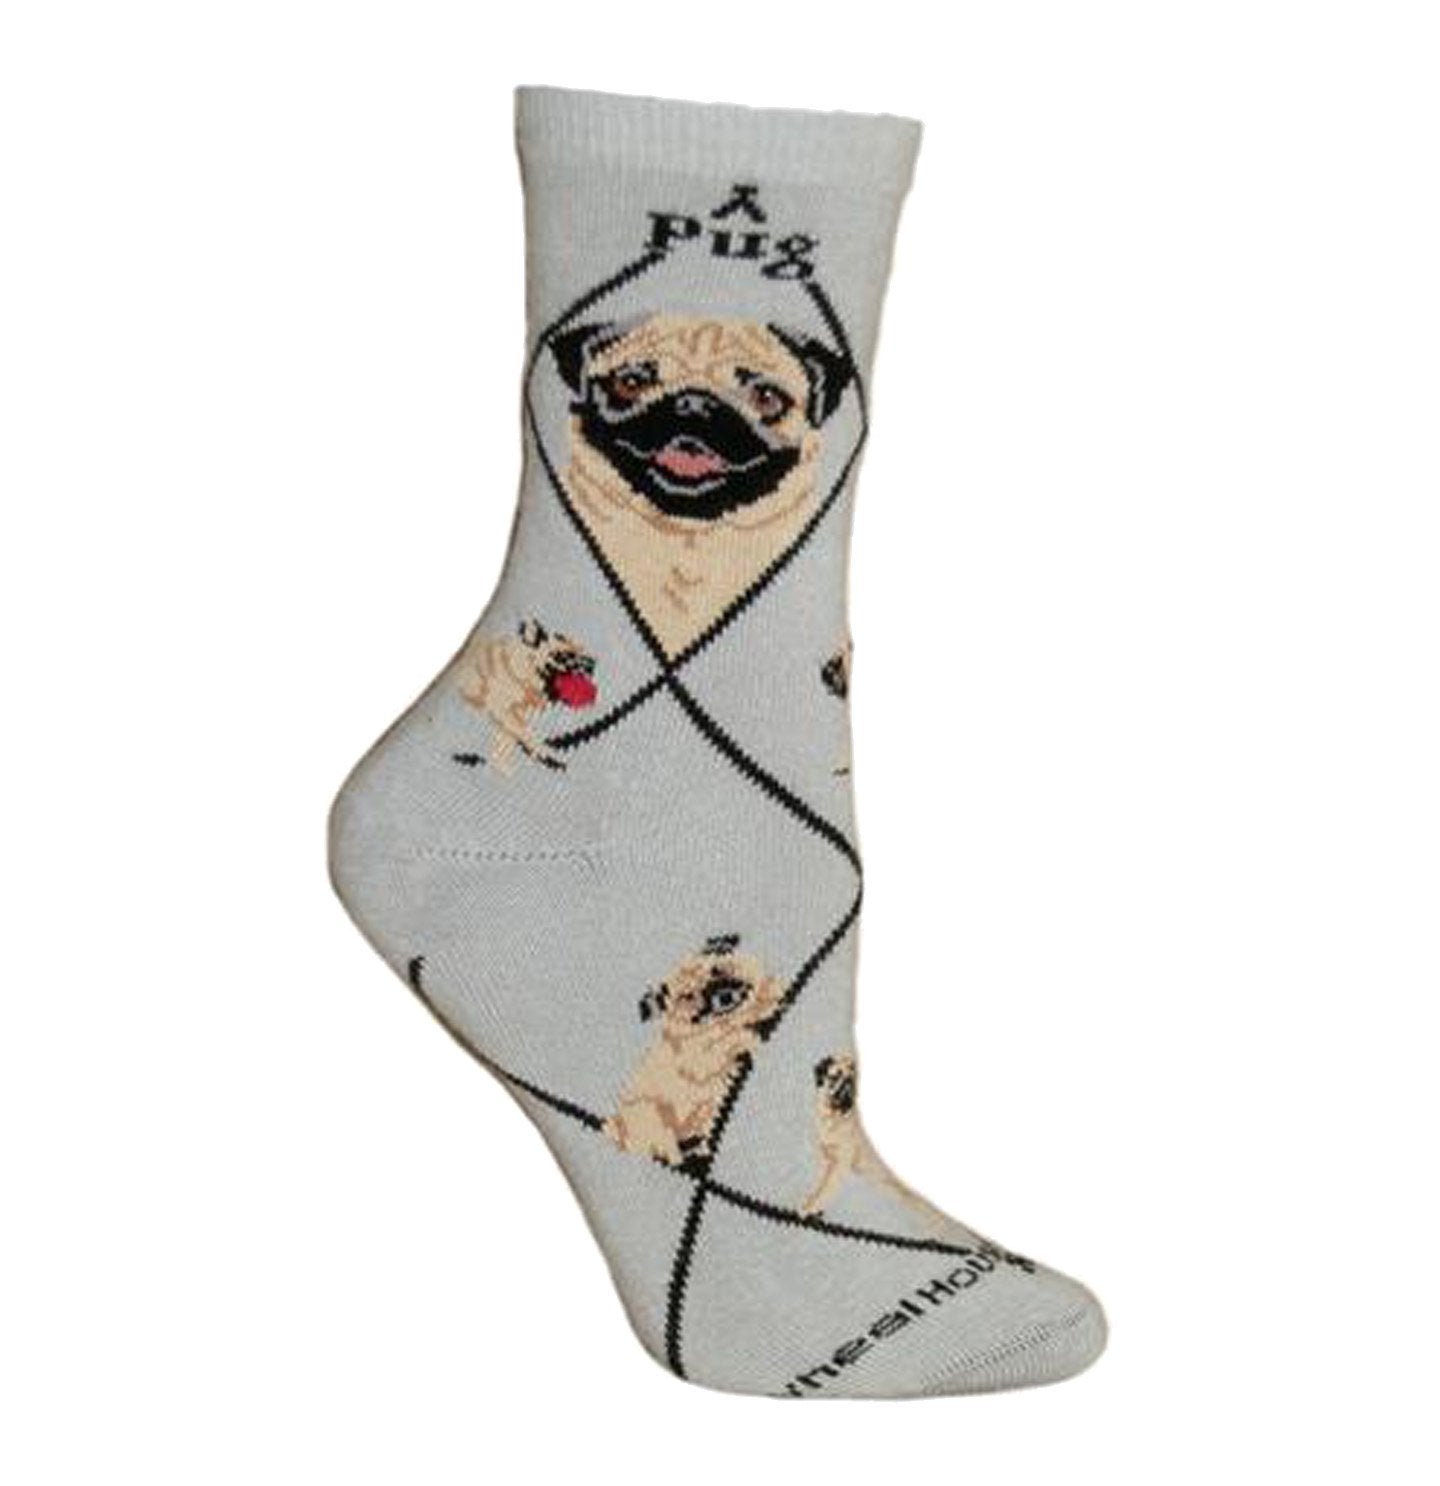 Animal Pride - Pug on Grey - Adult Cotton Crew Socks